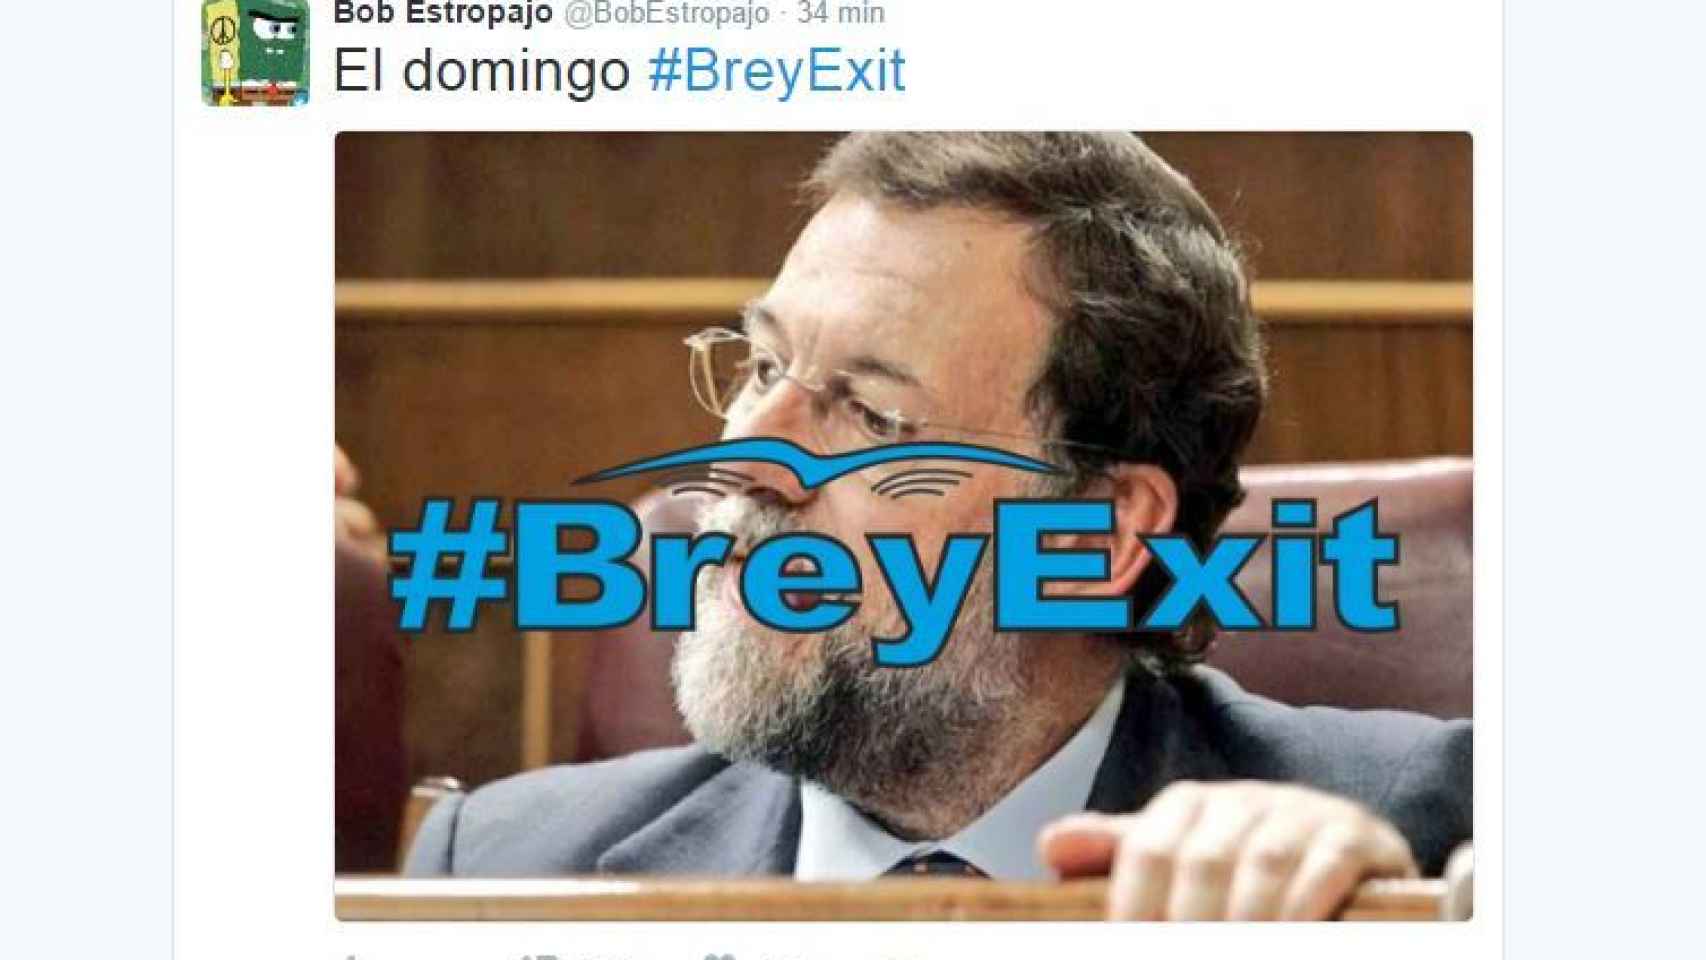 La plantilla con la que Twitter pide el #BreyExit.